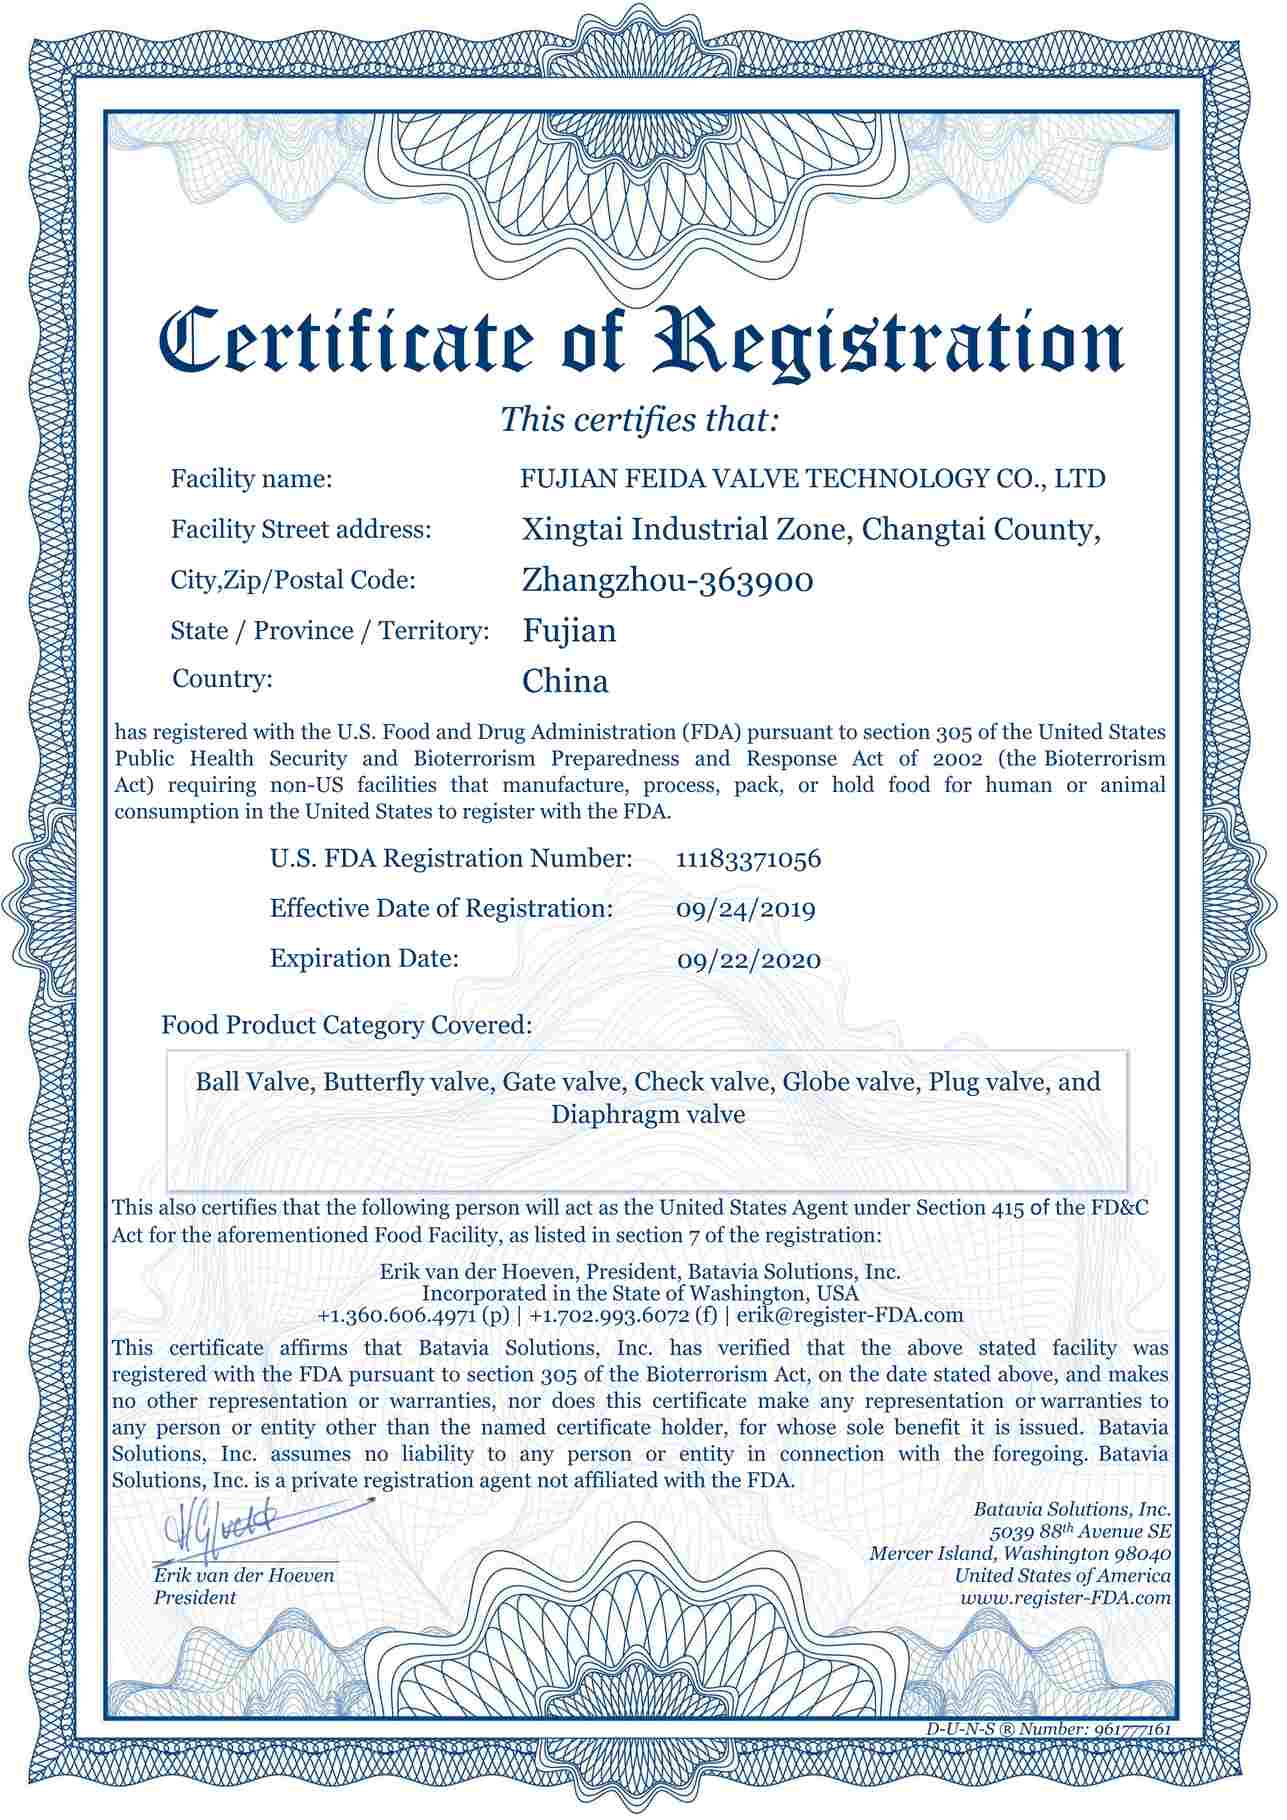 Certificado de la Administración de Alimentos y Medicamentos de EE. UU. (FDA)
        